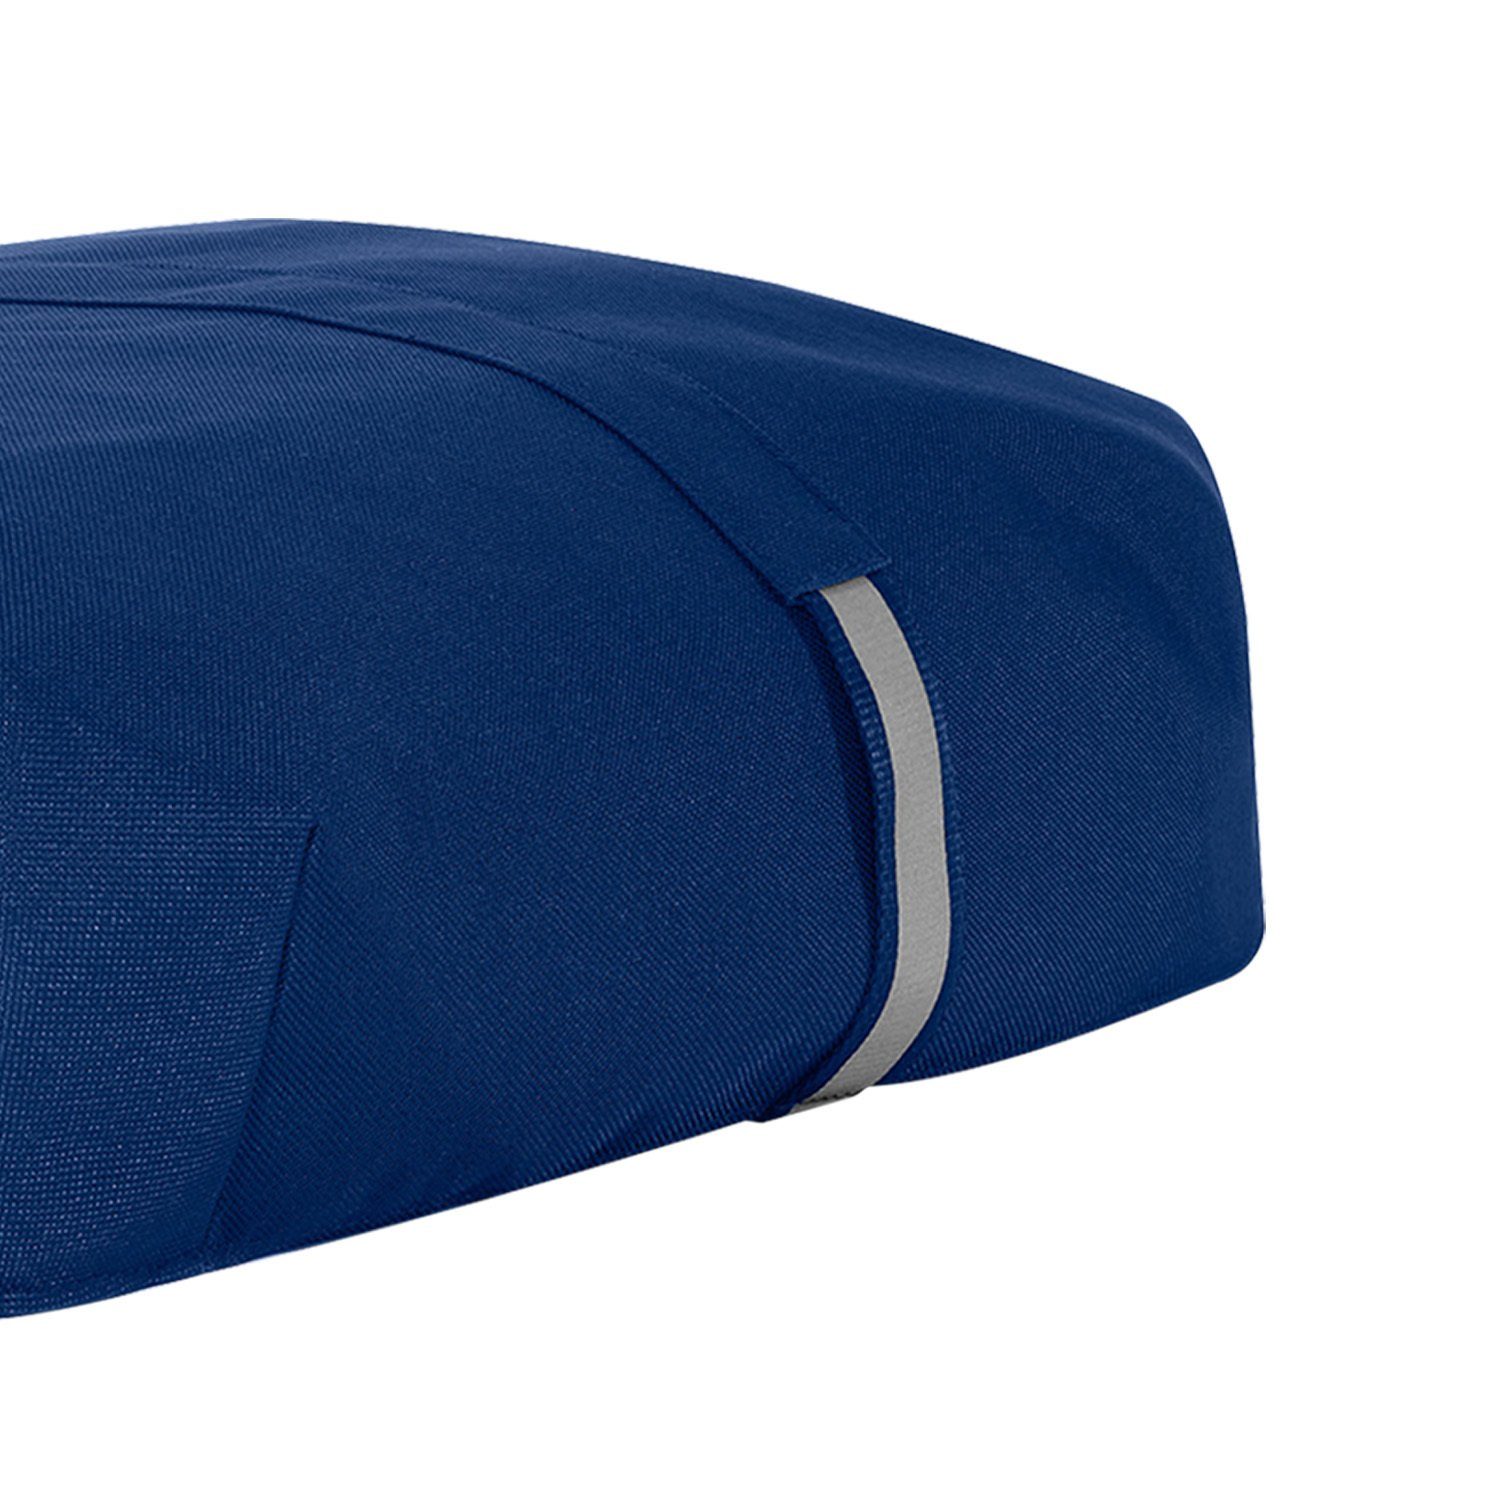 navy Einkaufstrolley Cover Abdeckung Schutzhülle REISENTHEL® carrybag - Wetterschutz Auswahl